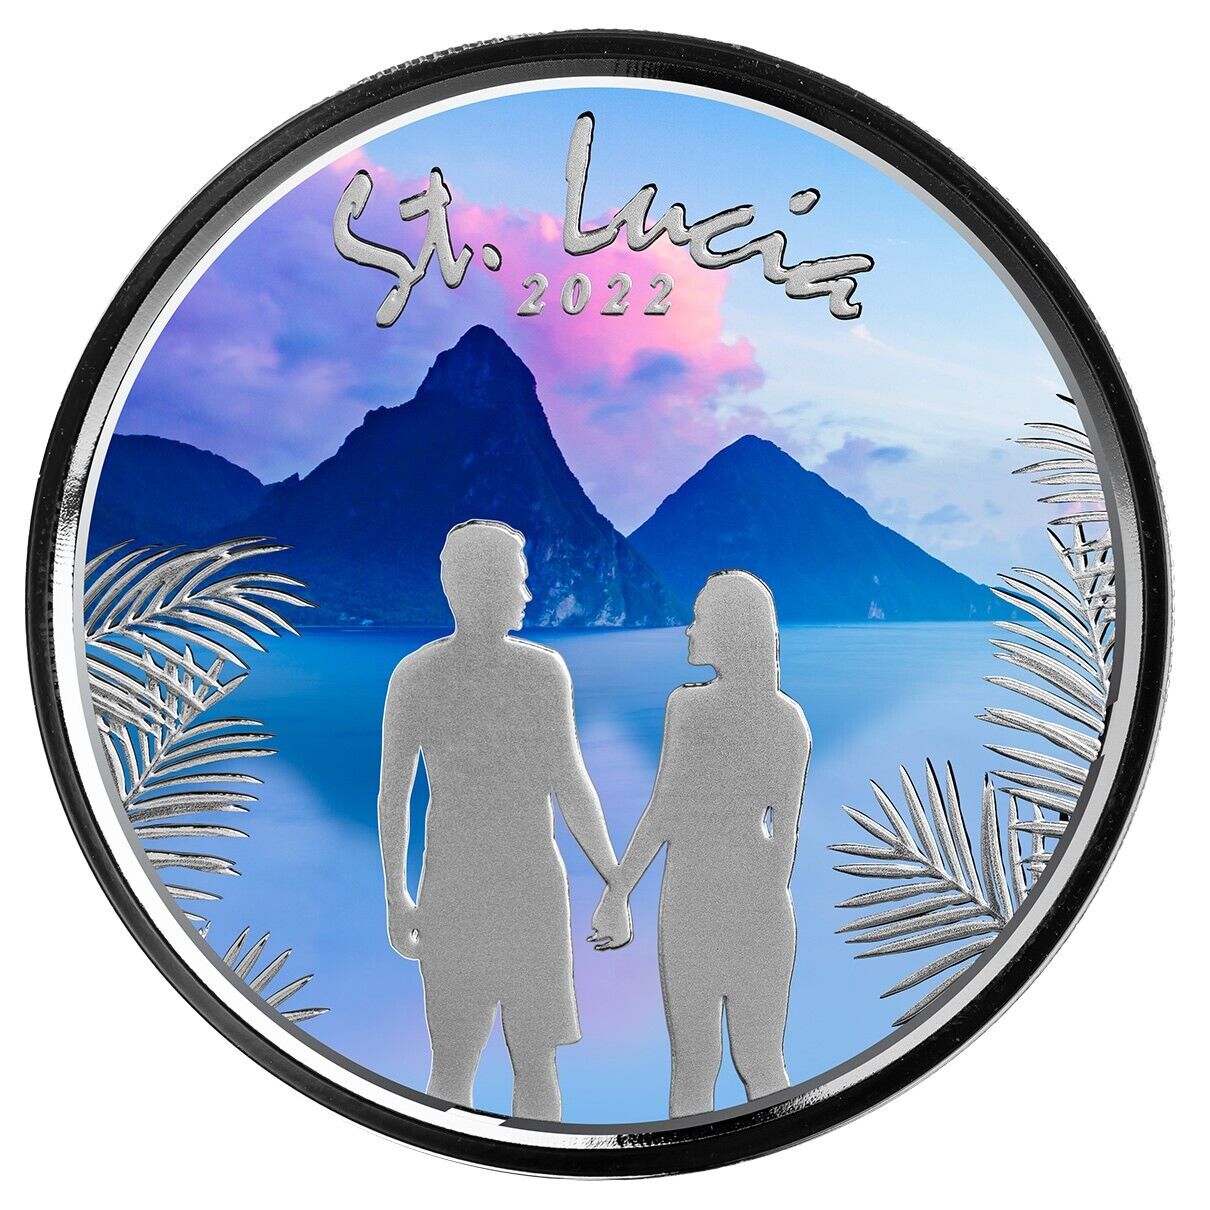 1 Oz Silver Coin 2022 EC8 Saint Lucia $2 Scottsdale Mint Color Proof - Couple-classypw.com-1